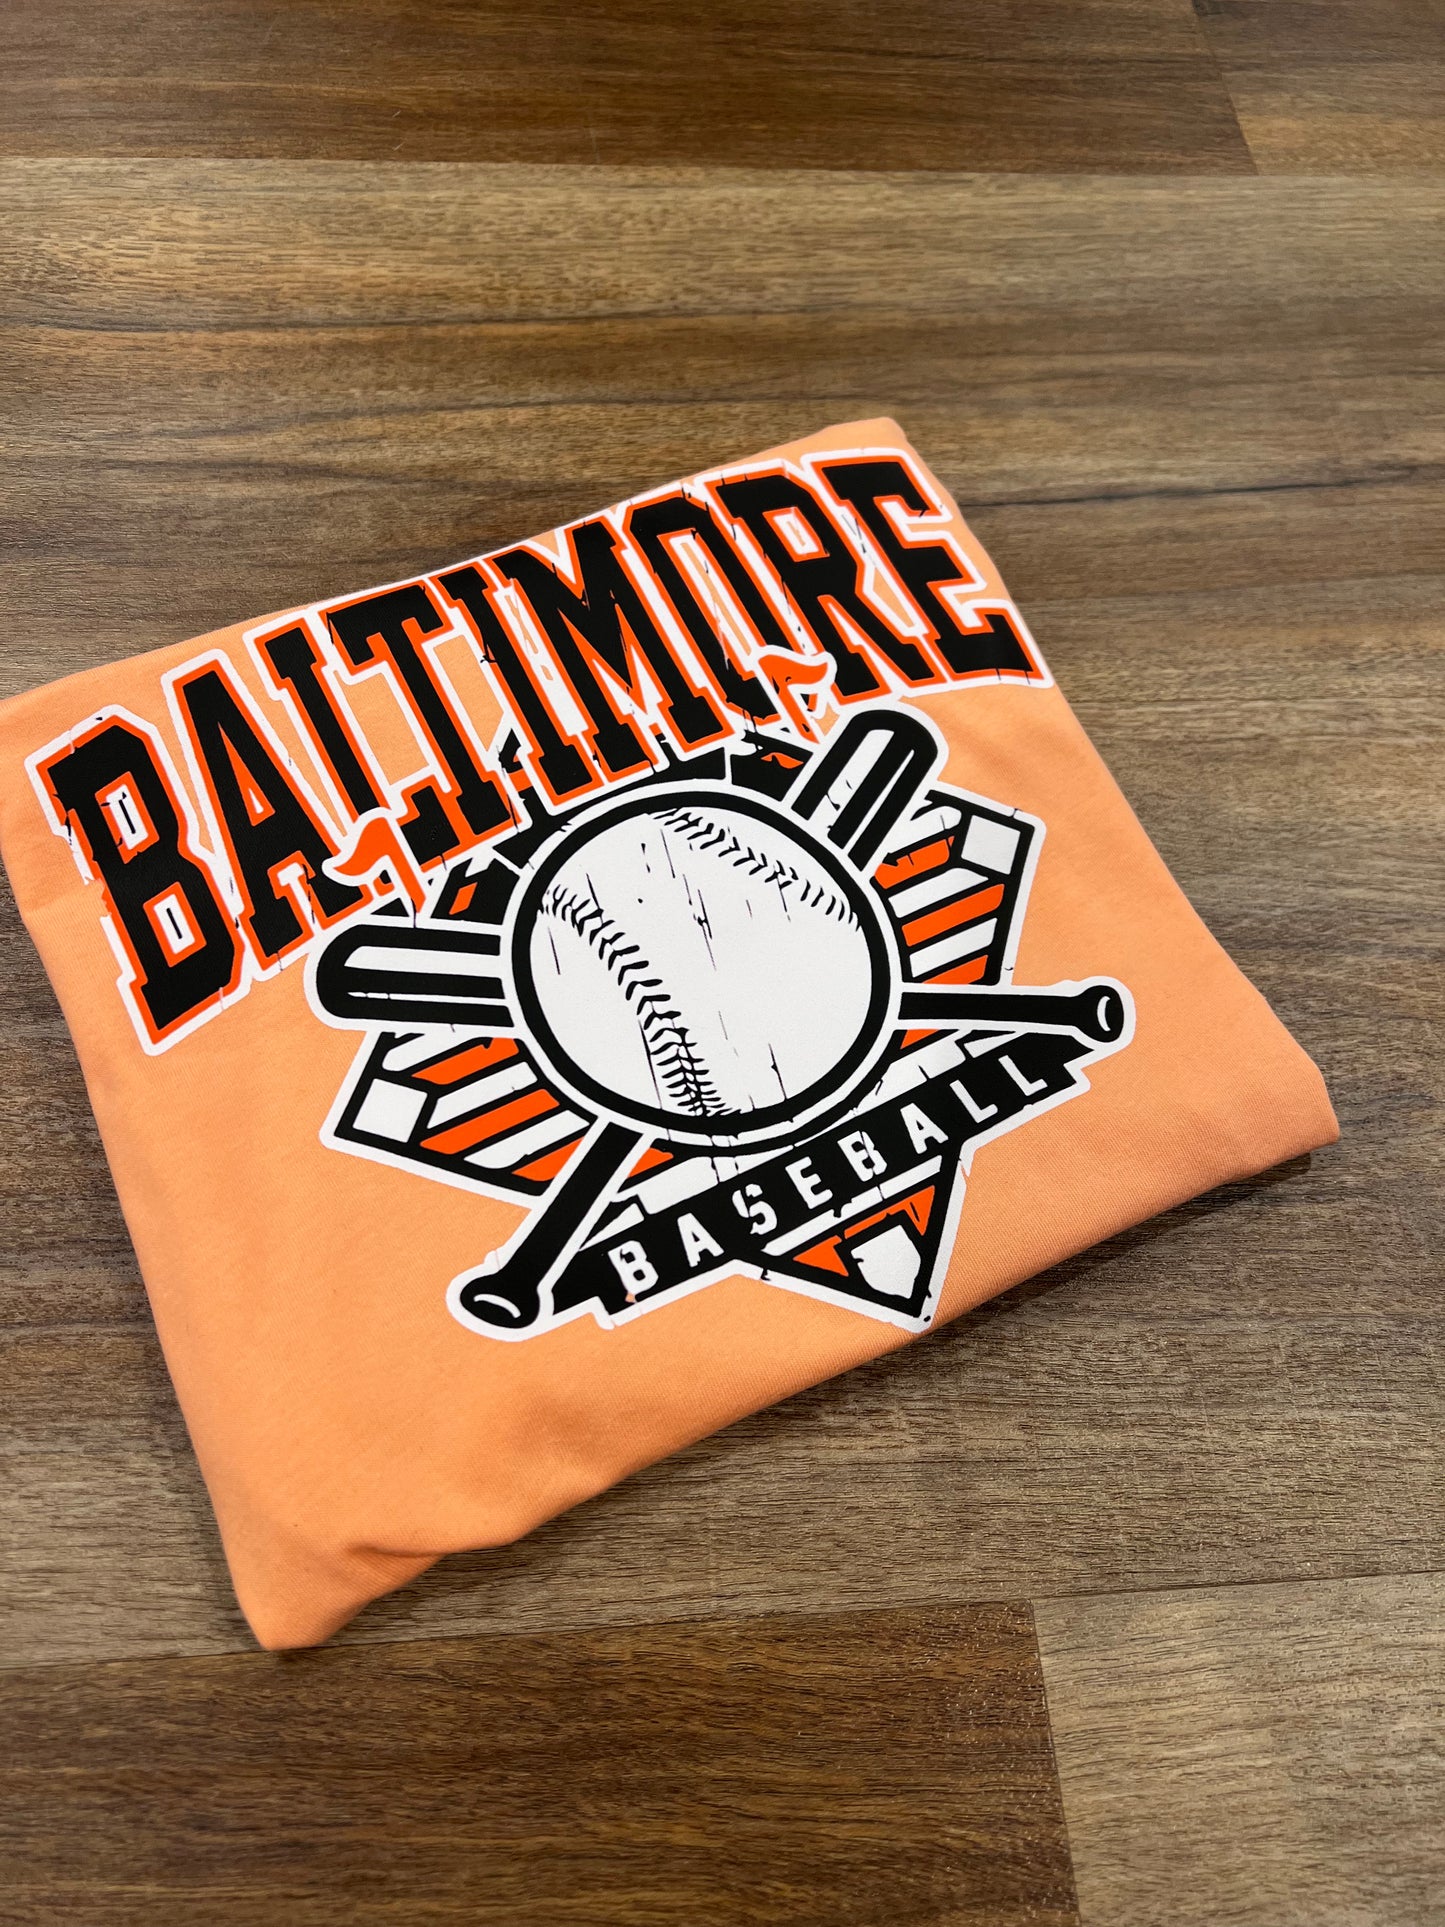 Baltimore baseball